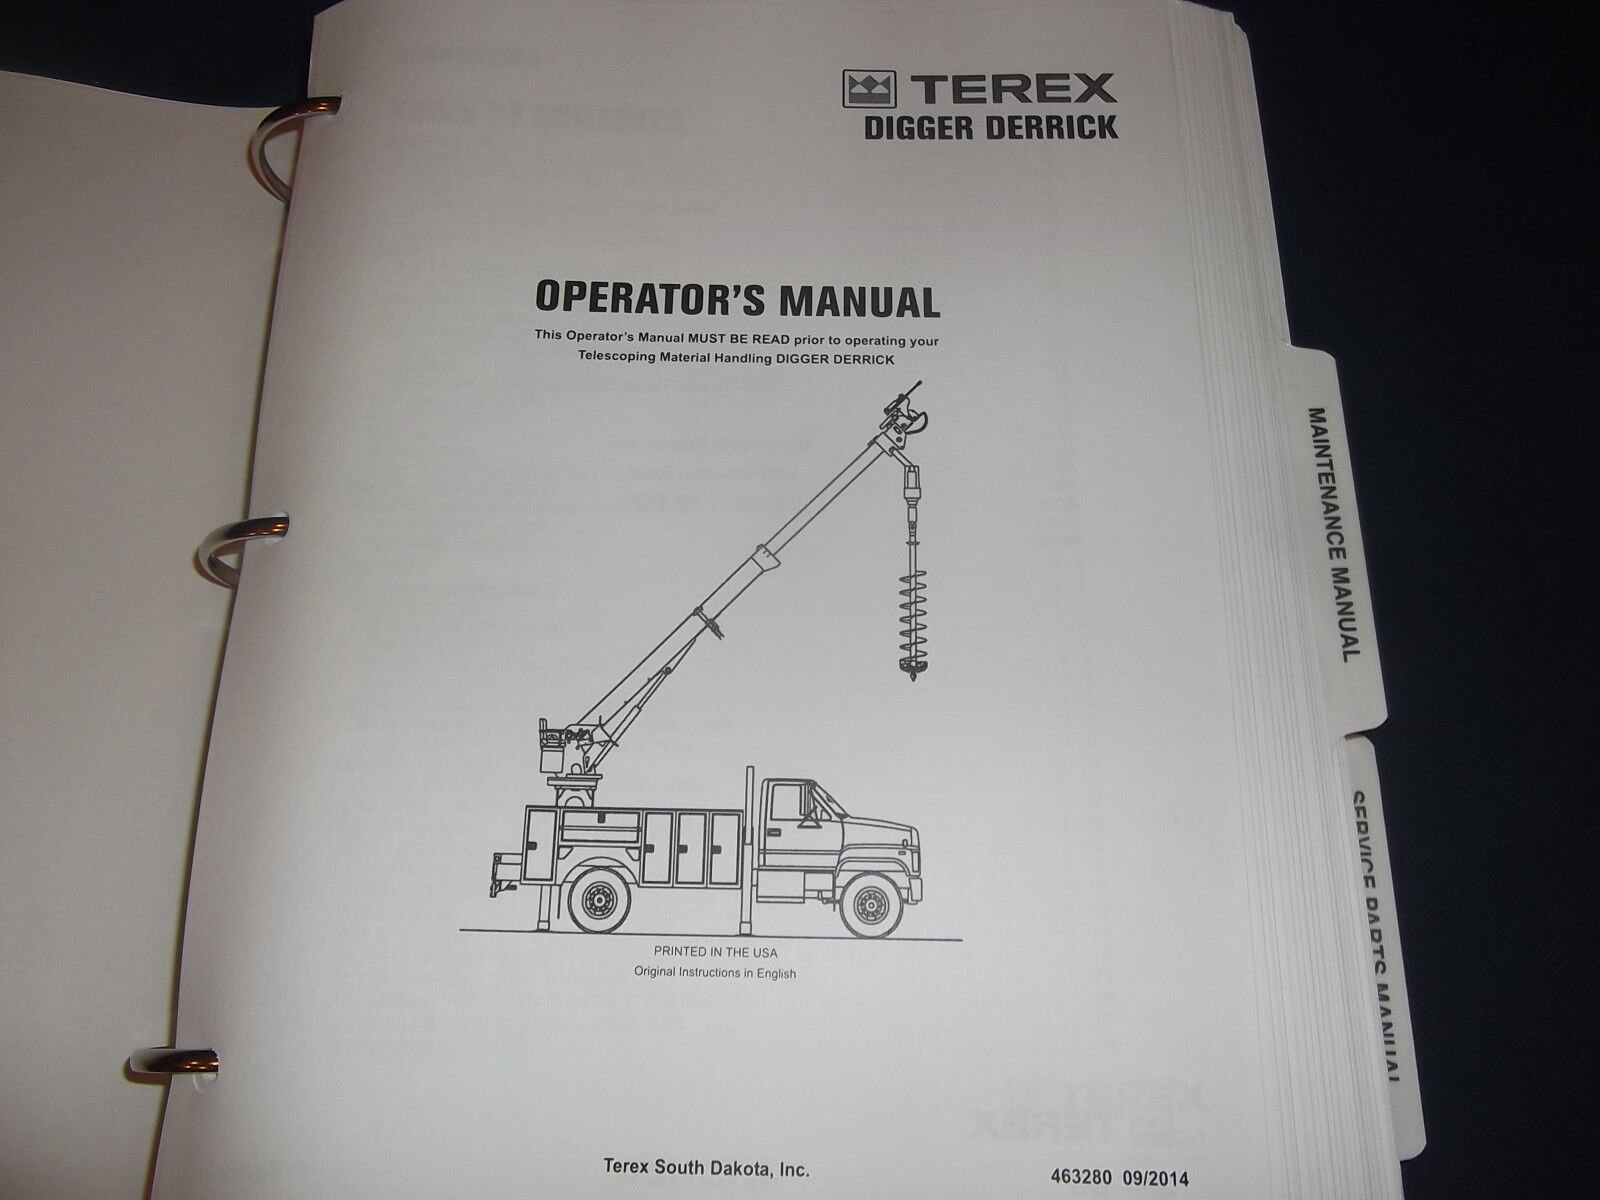 Details zu  Terex C5050 Gräber Derrick Lkw Betreiber Teile Pflege Service Manuell Echtes heimisches Produkt